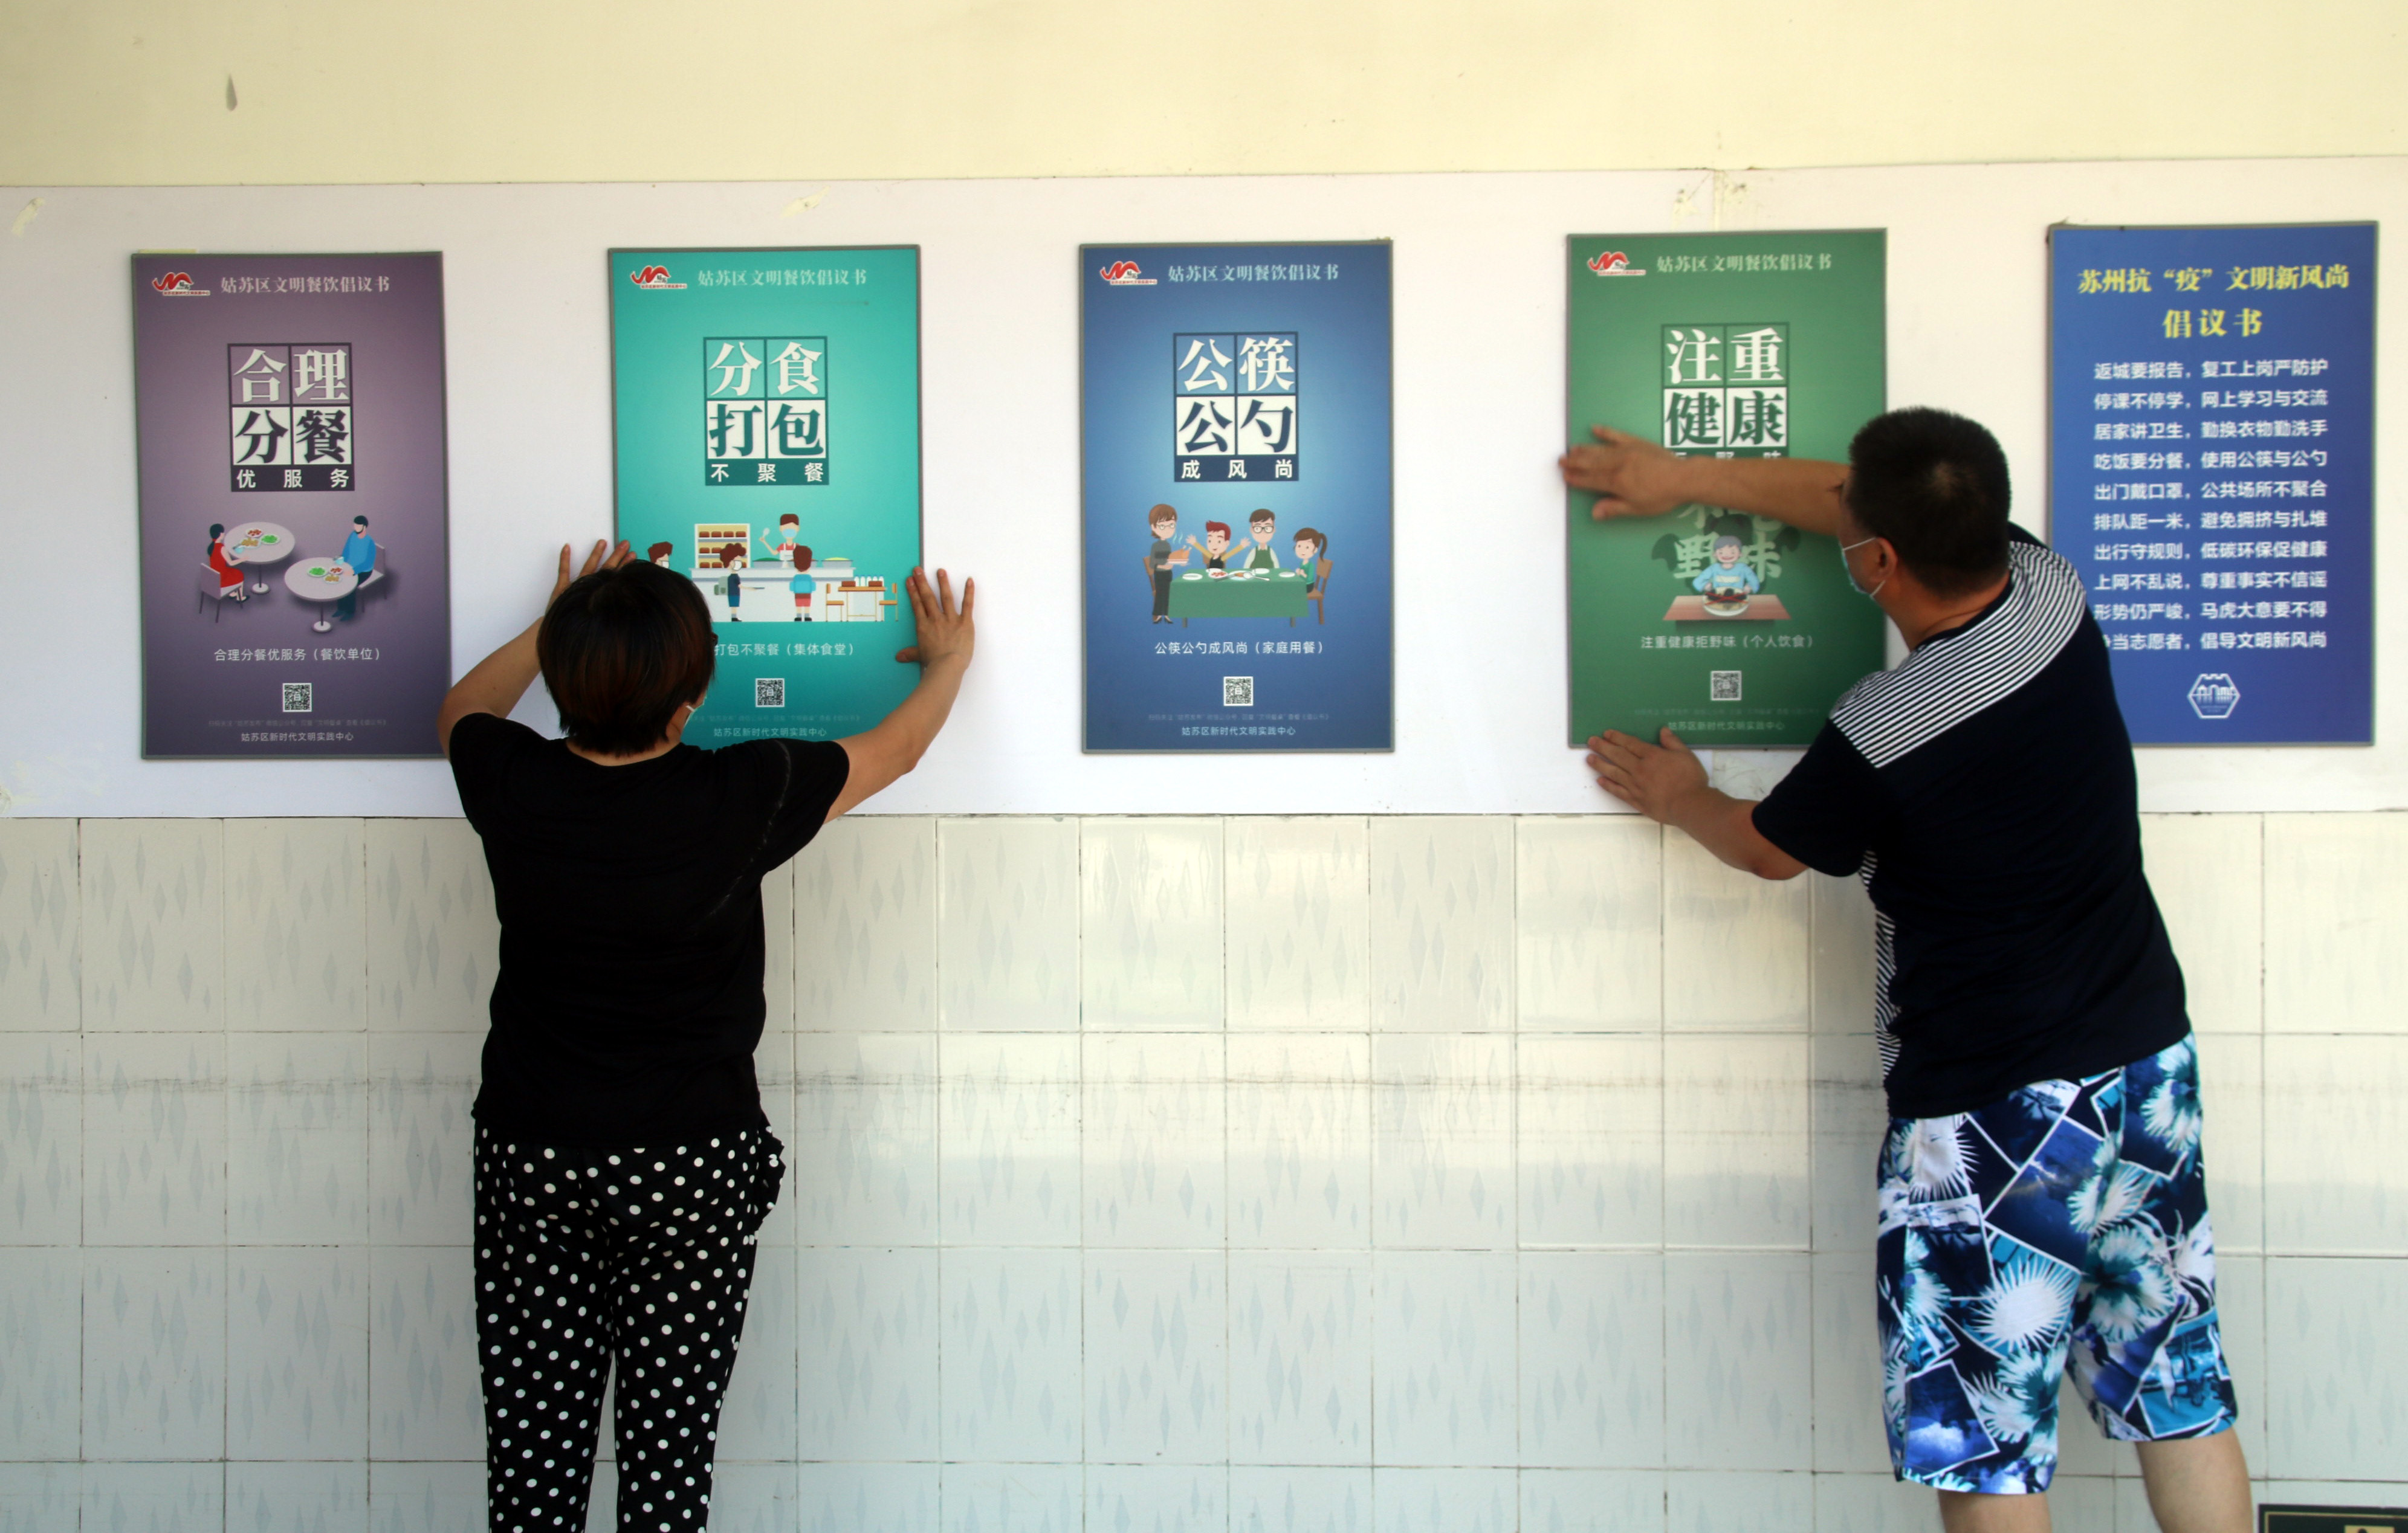 苏州市虎丘中心幼儿园张贴光盘海报迎接新学期